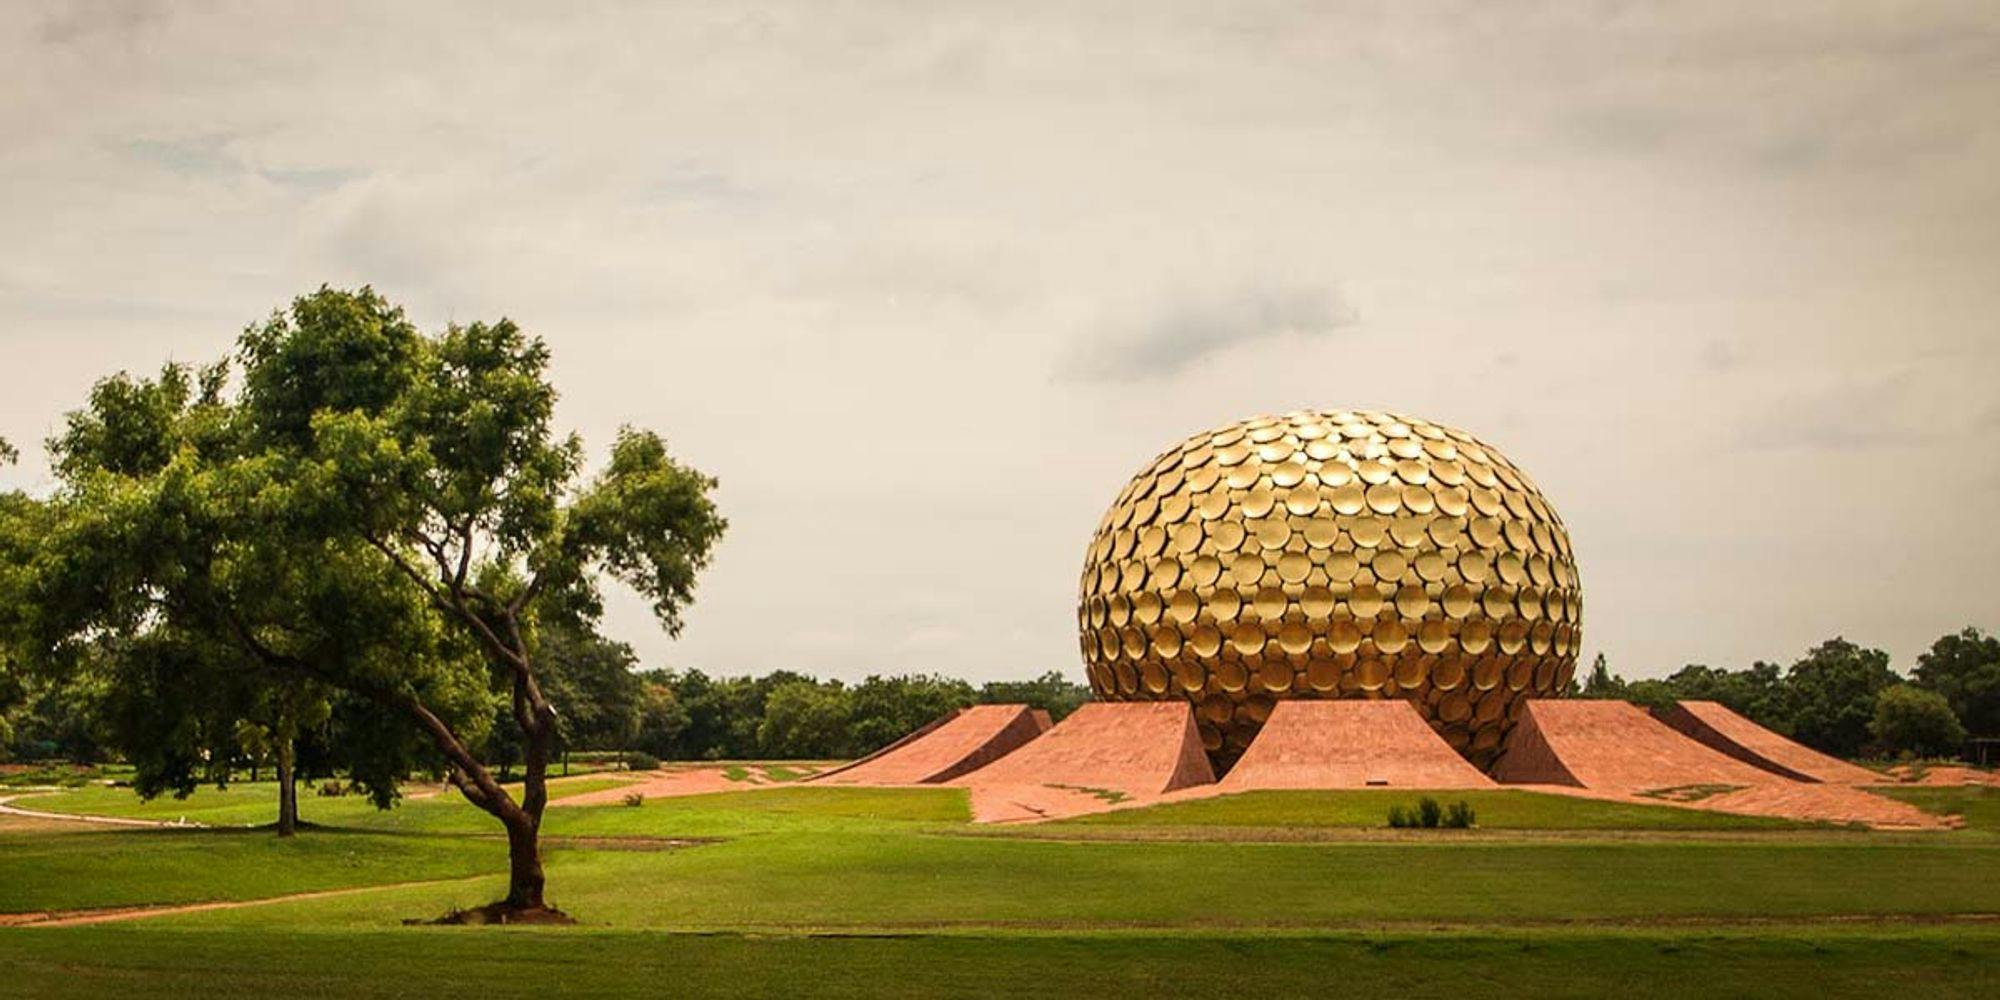 İlginç hikâyesiyle göze çarpan bir ekoköy: Auroville